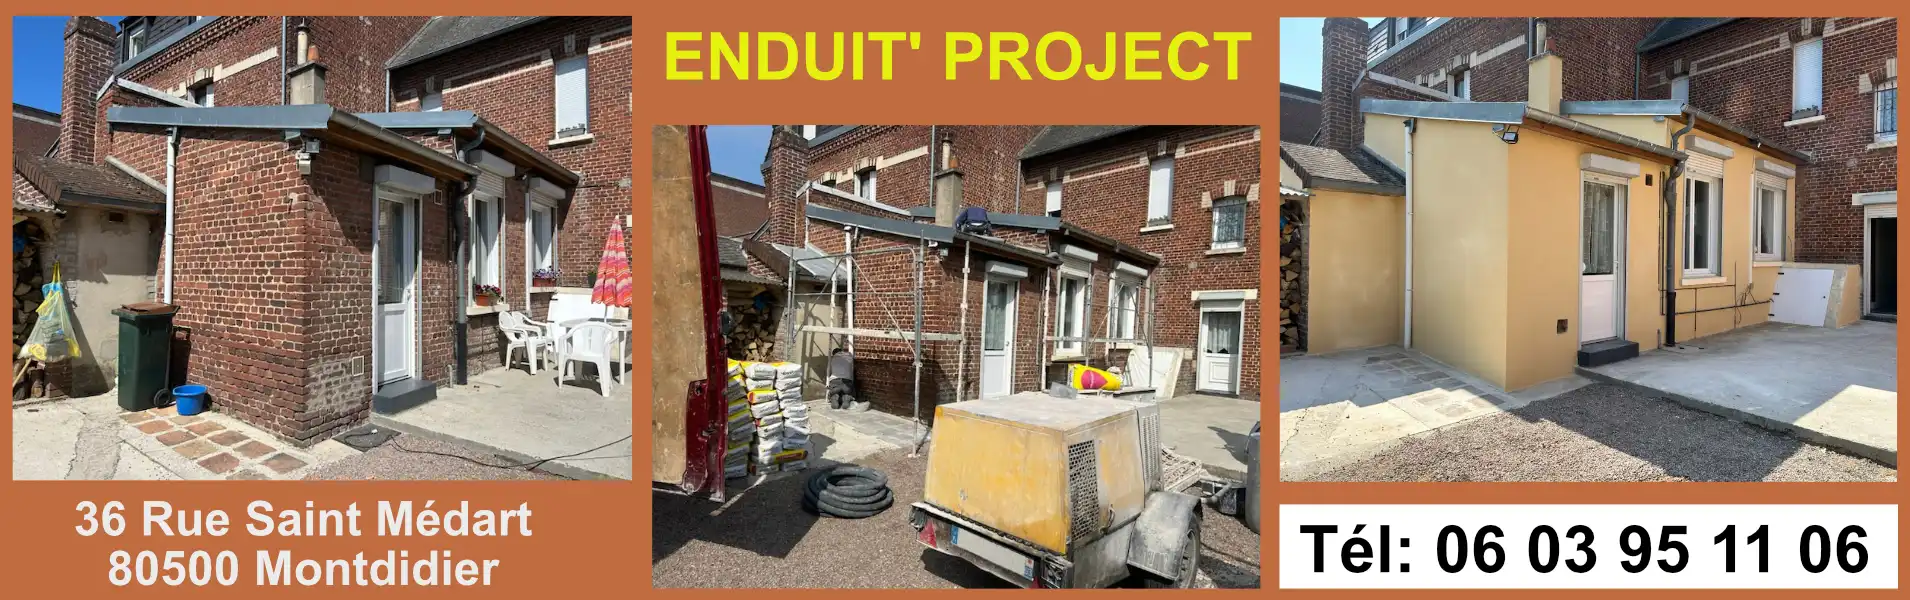 Enduit-project